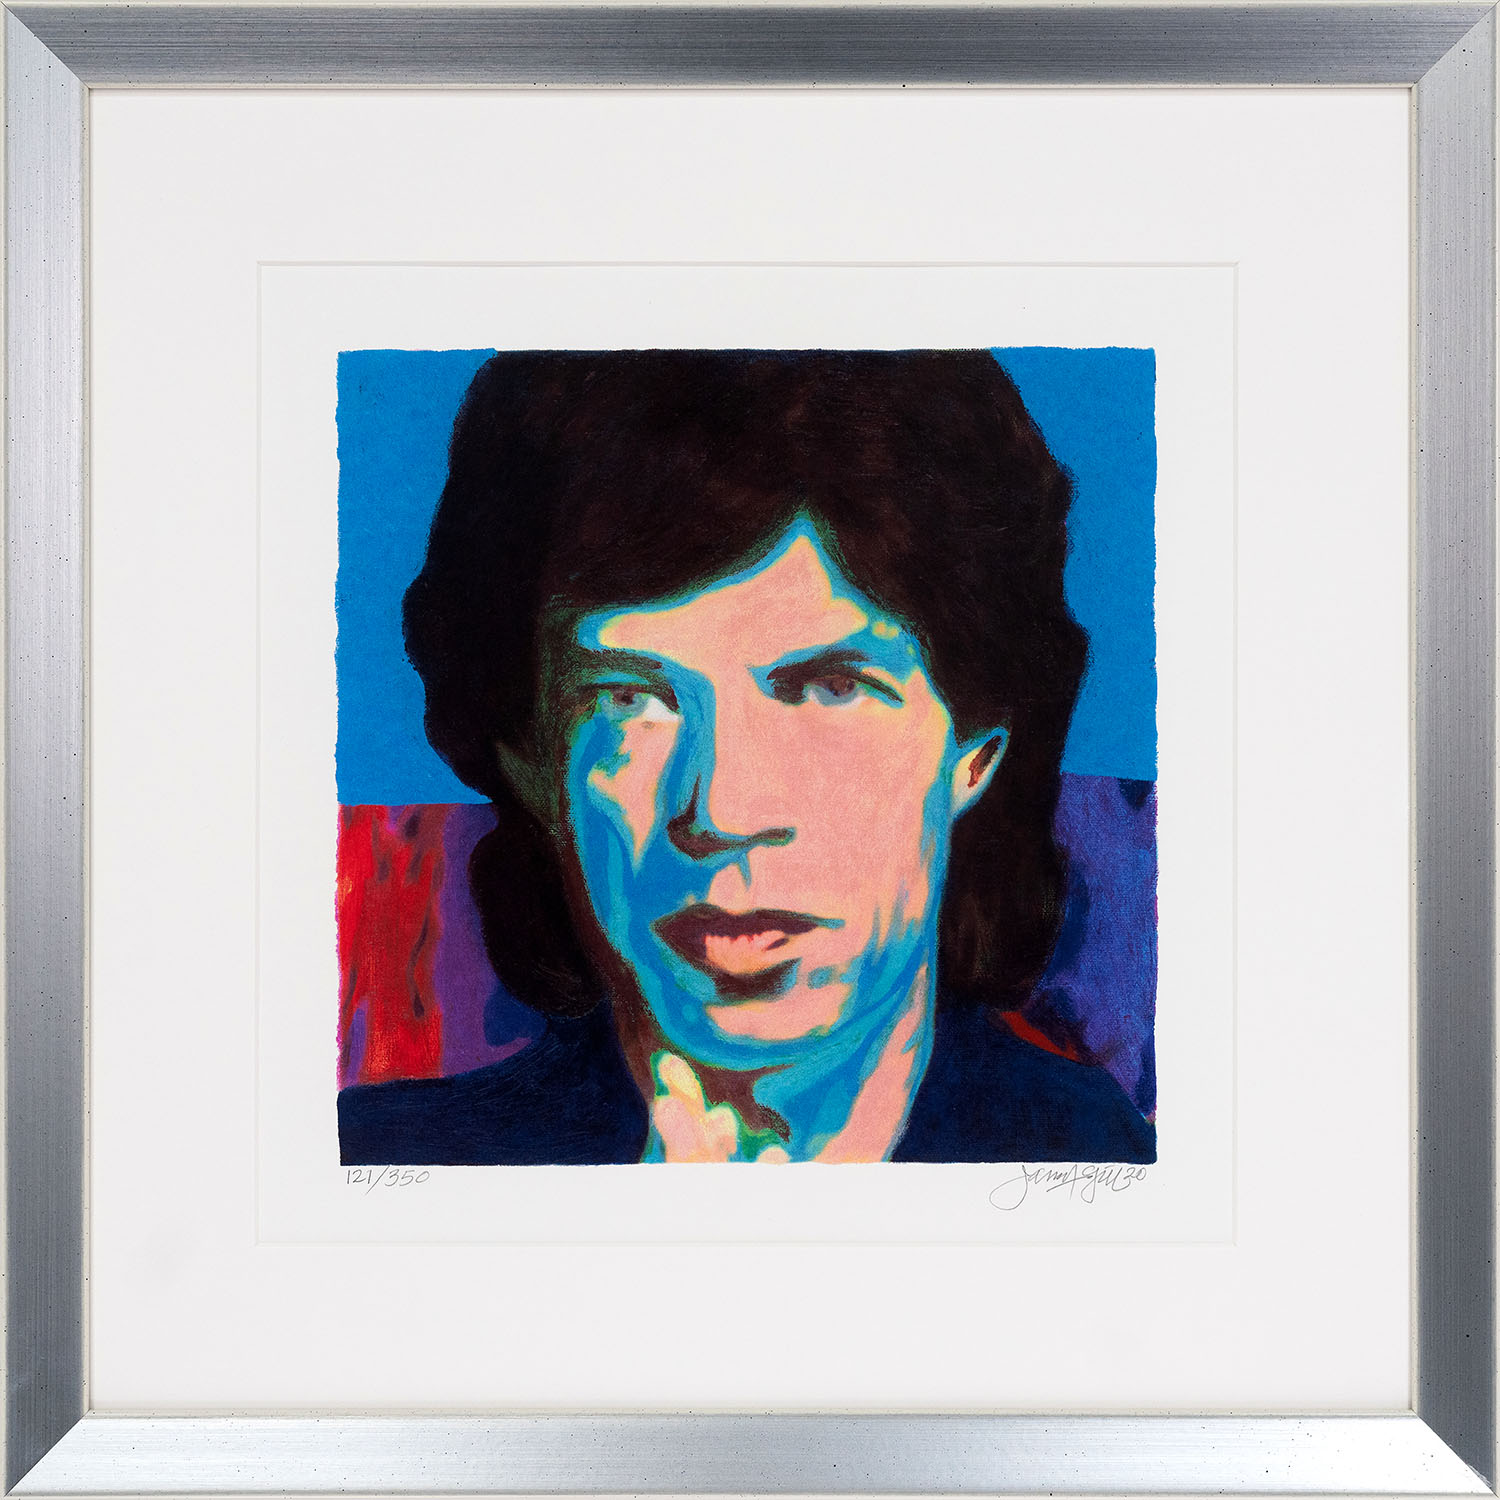 Mini Mick Jagger 1